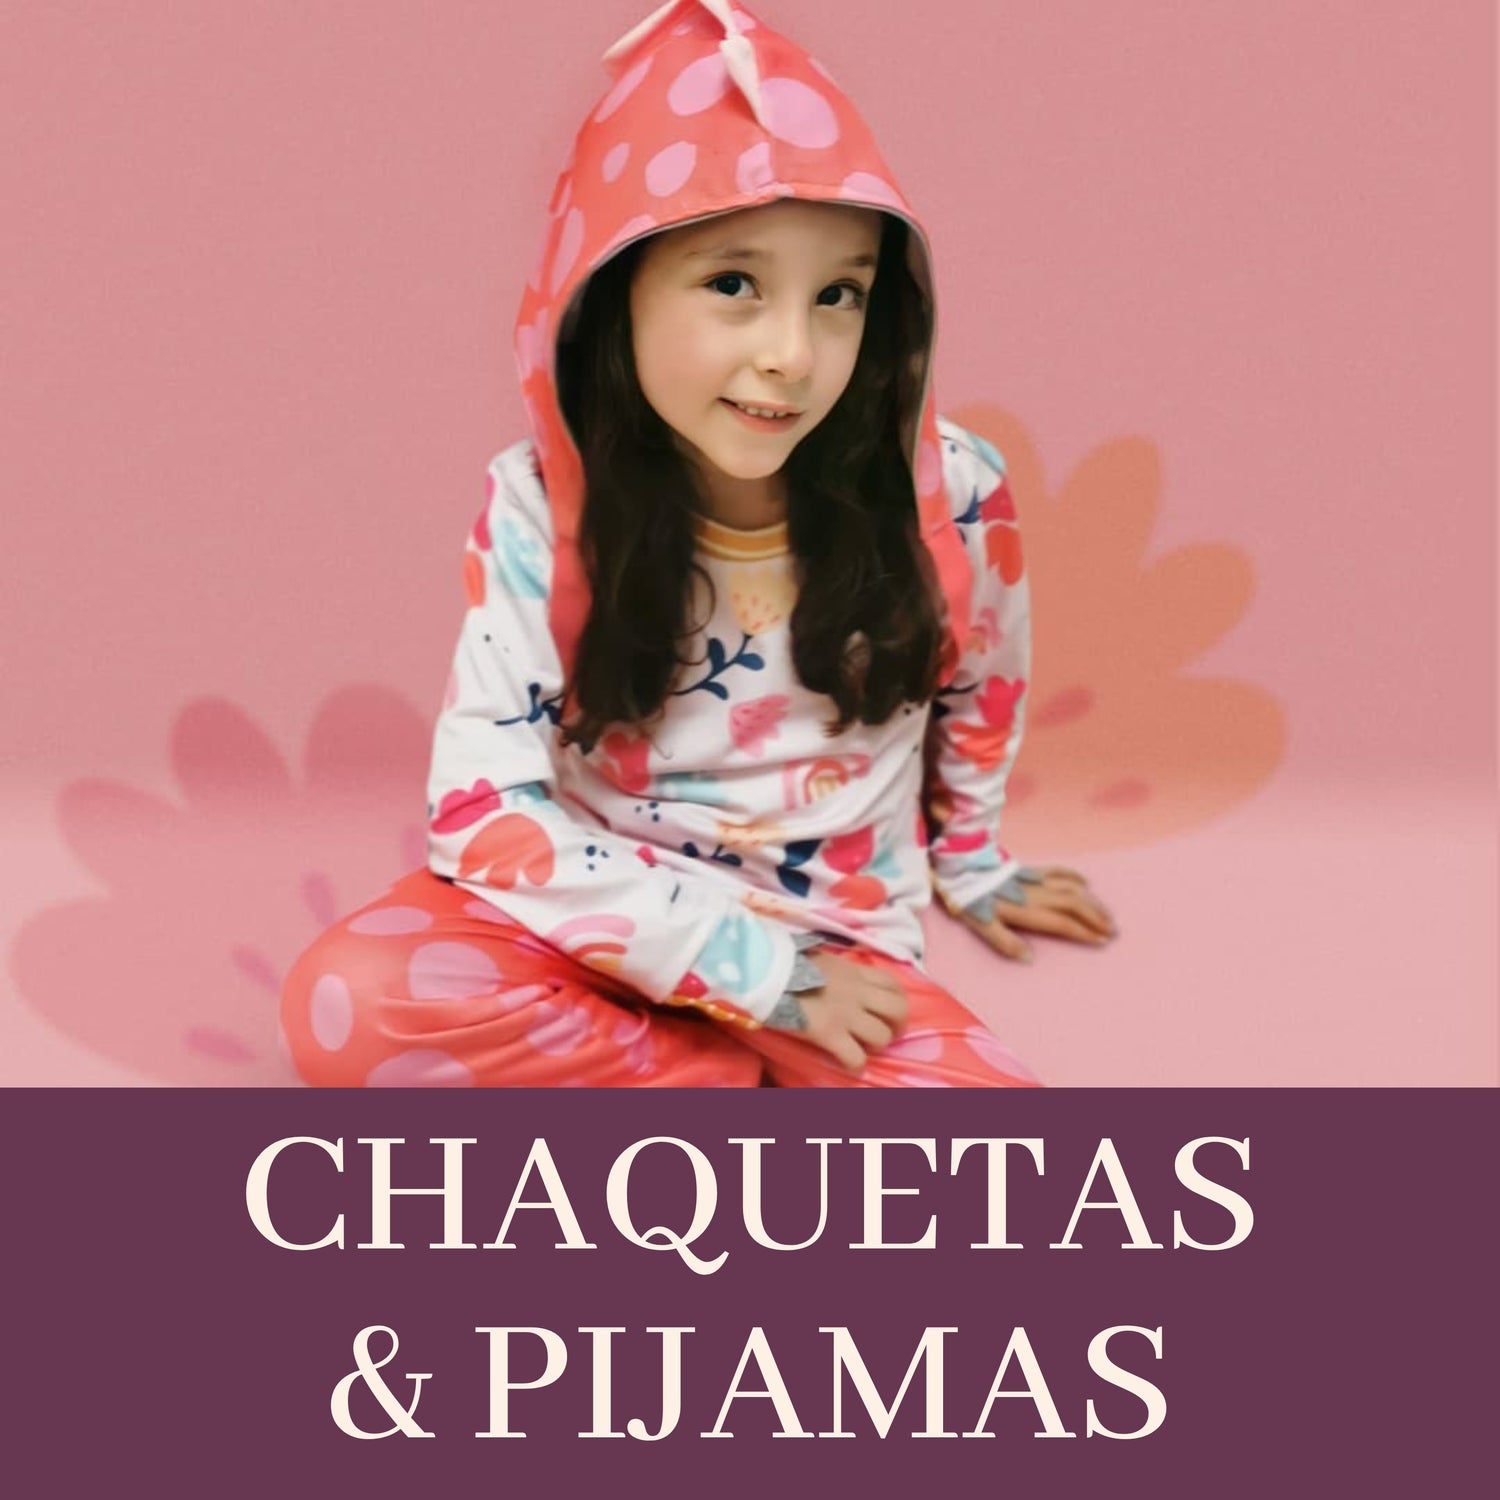 CHAQUETAS & PIJAMAS